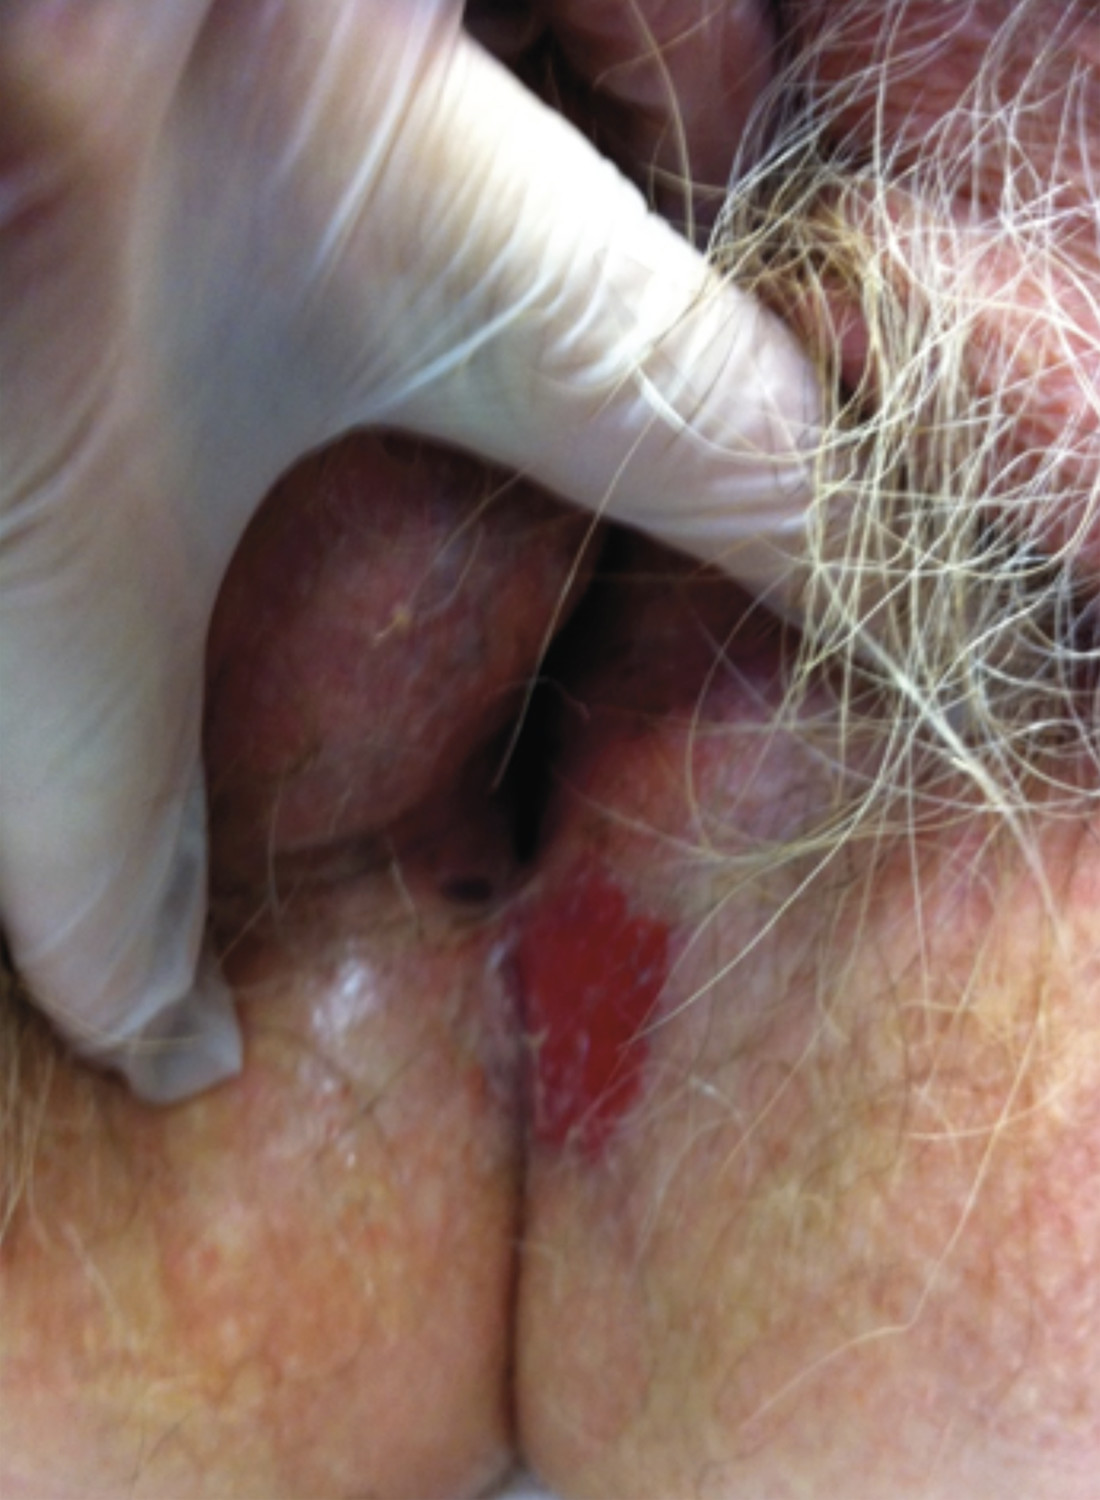 Consultation gynéco-dermatologique de pathologie vulvaire - Figure 7